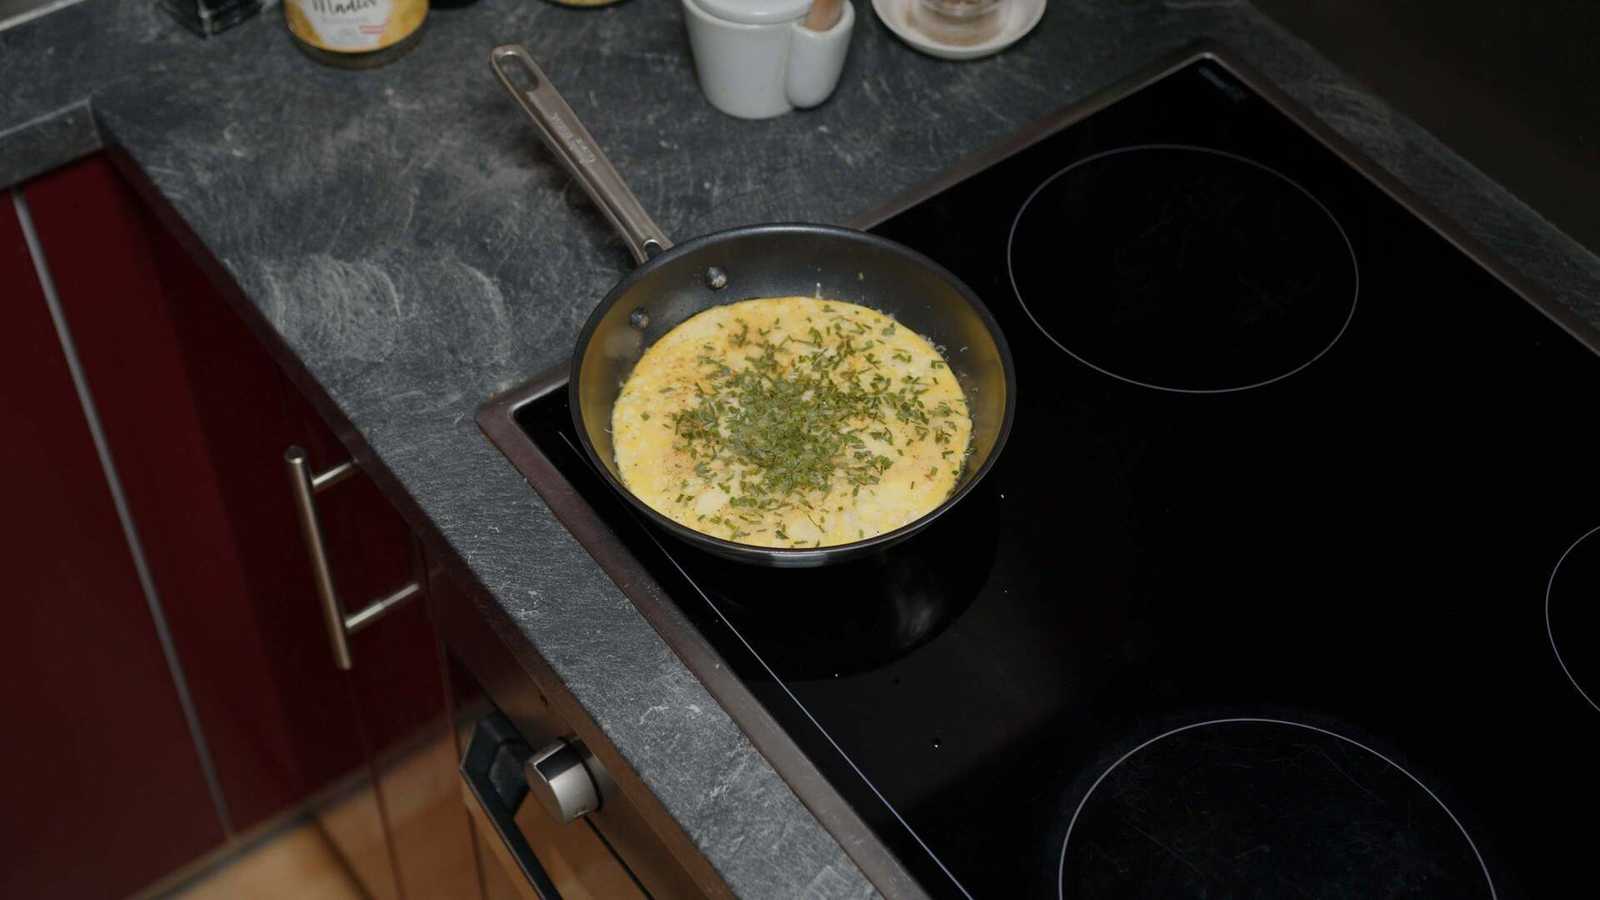 No longer jiggling eggs shown in a pan